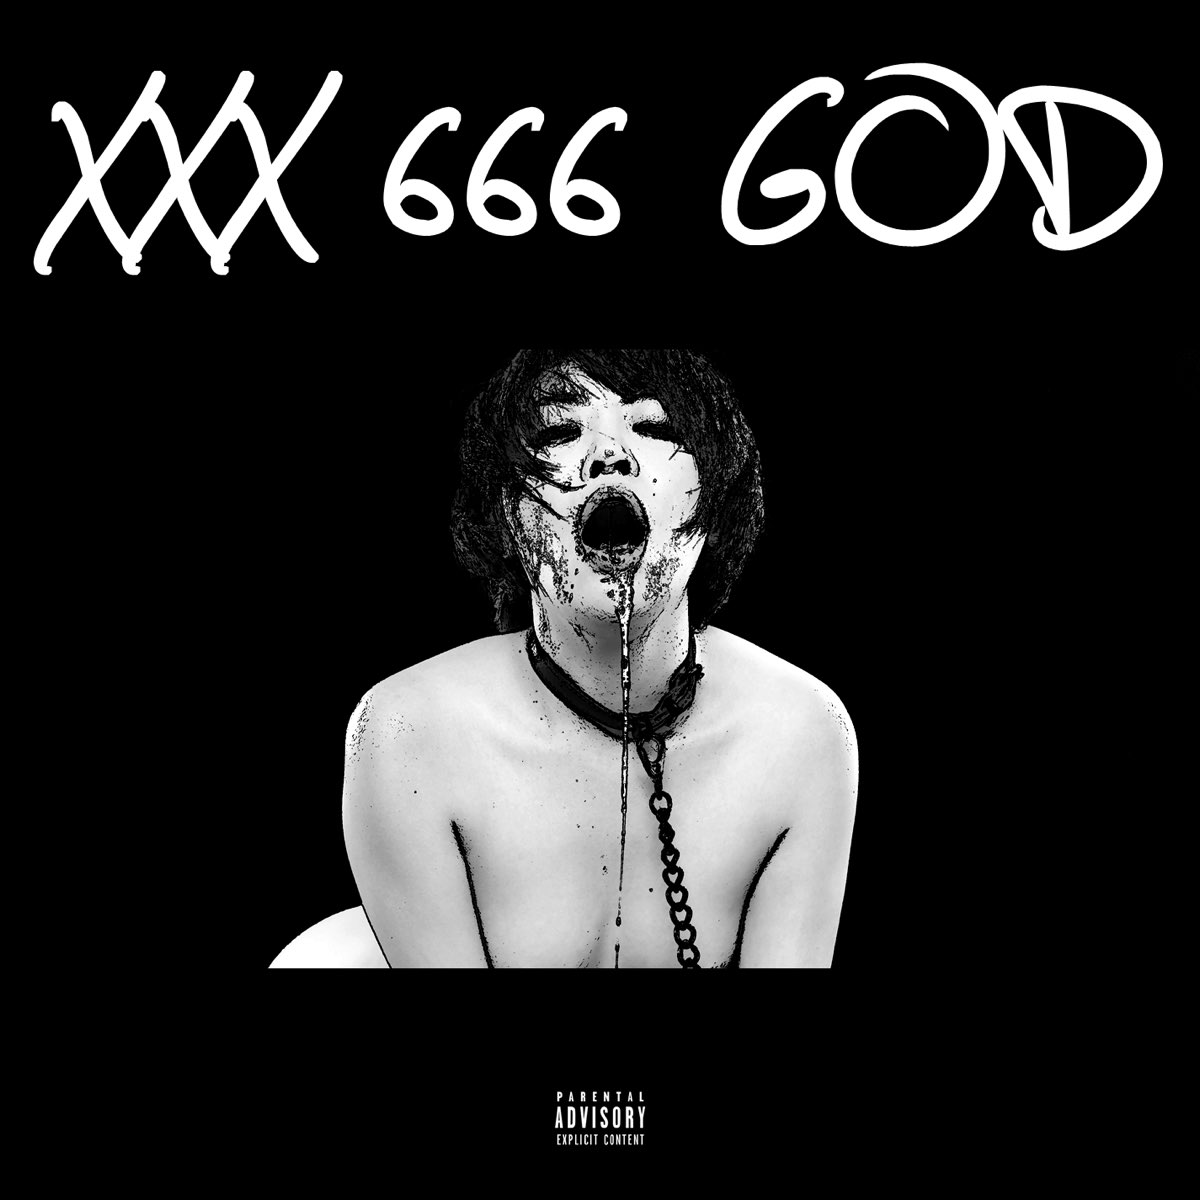 Asian Porn EP de XXX 666 GOD en Apple Music